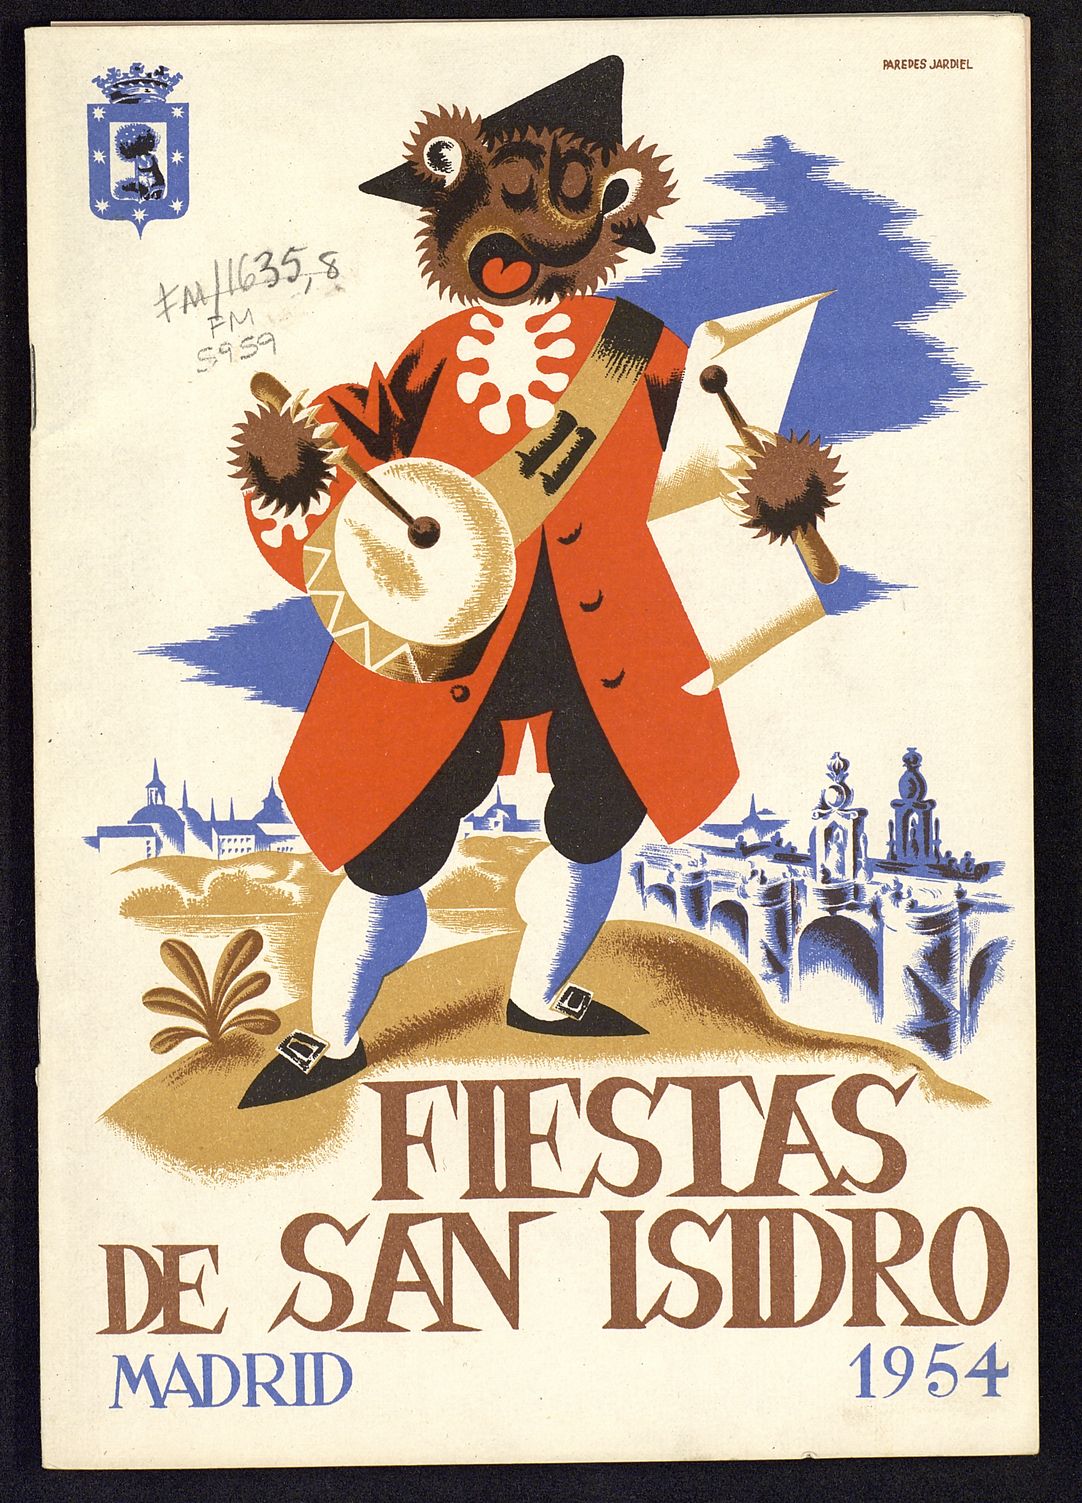 Programa oficial de las Fiestas de San Isidro organizadas por el Ayuntamiento de Madrid: Año 1954